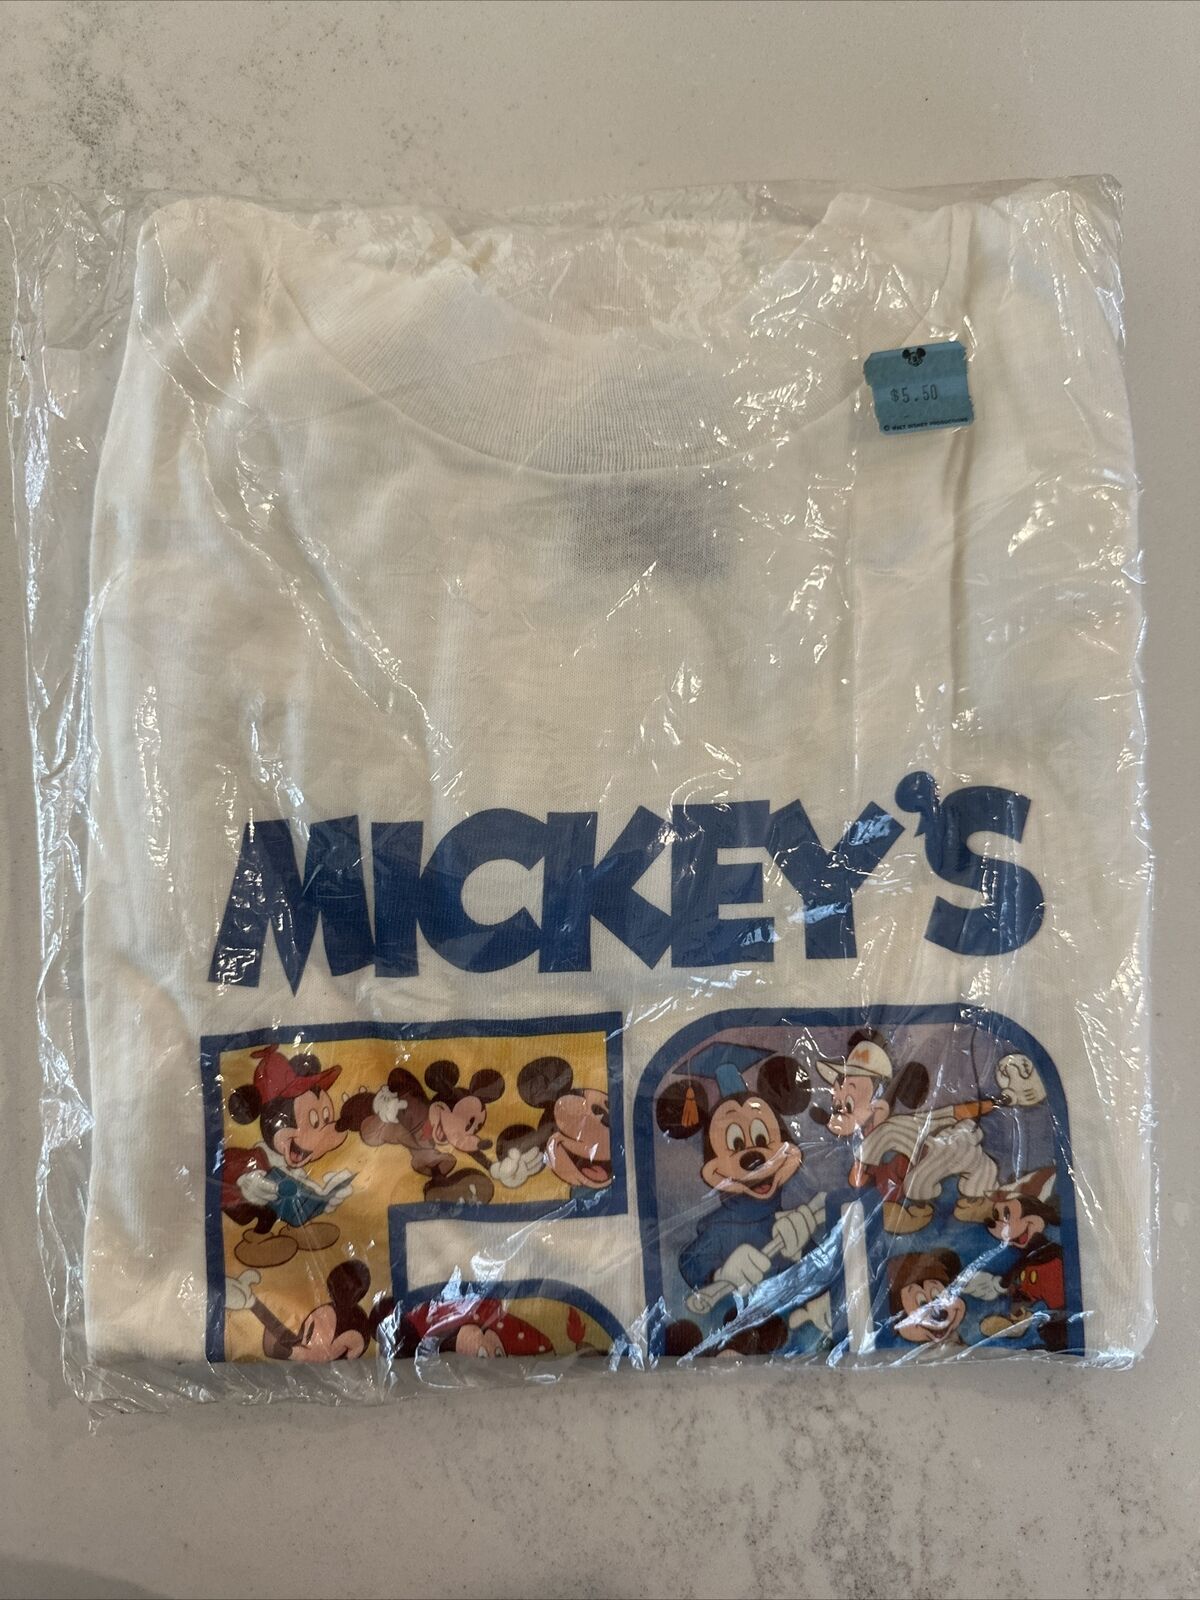 NEW NOS Vintage Walt Disney Mickeys 50 1976 TShirt Med Made USA - Pkg Open